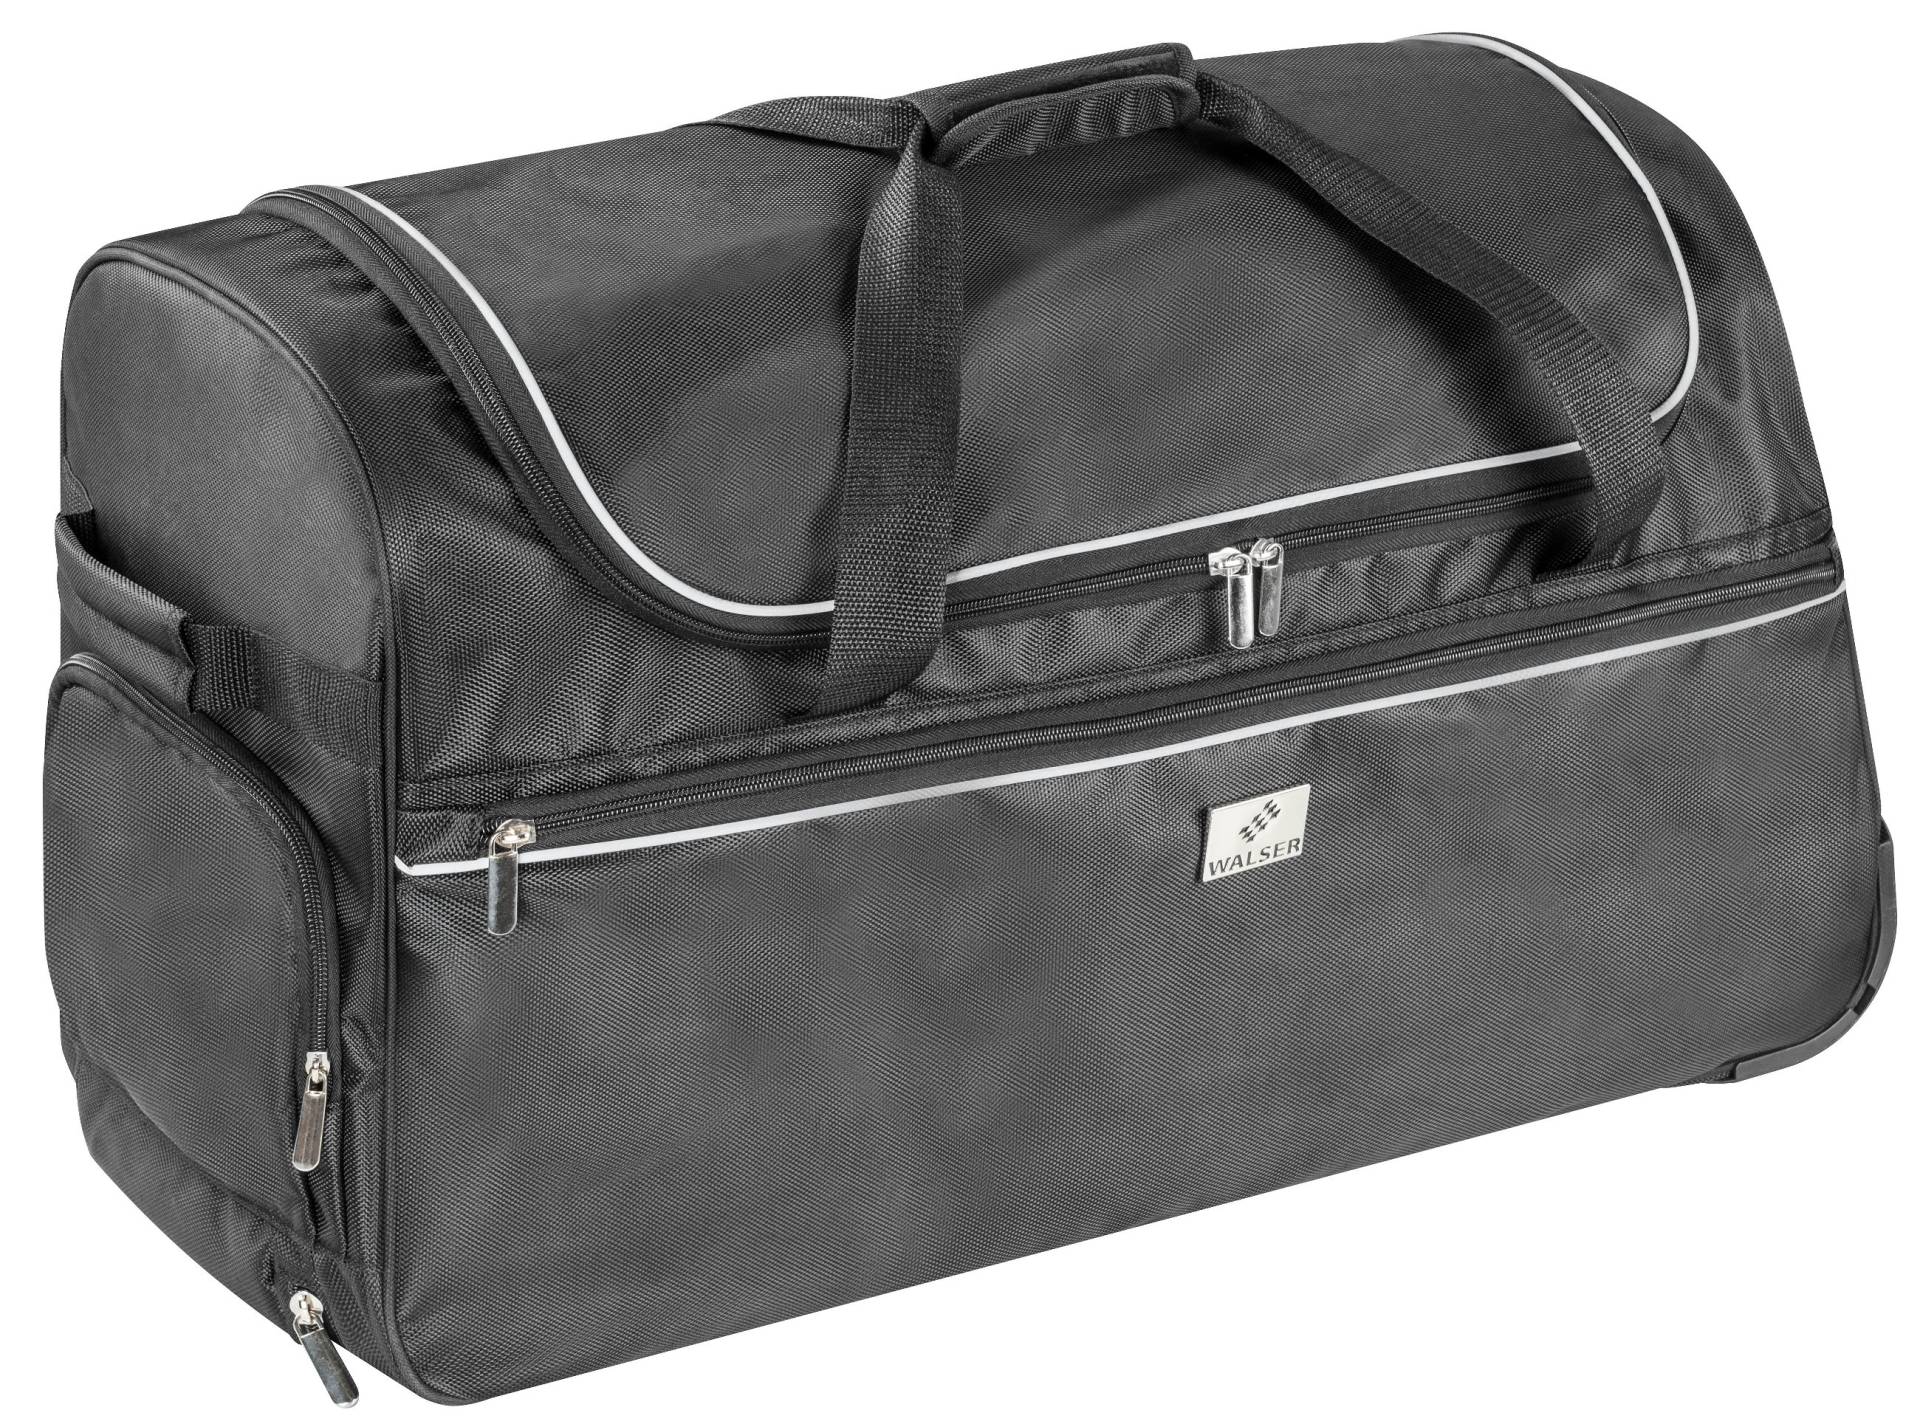 Carbags Trolley Bag, Reisetasche, Reisetrolley 85L - 60x30x40 cm von WALSER